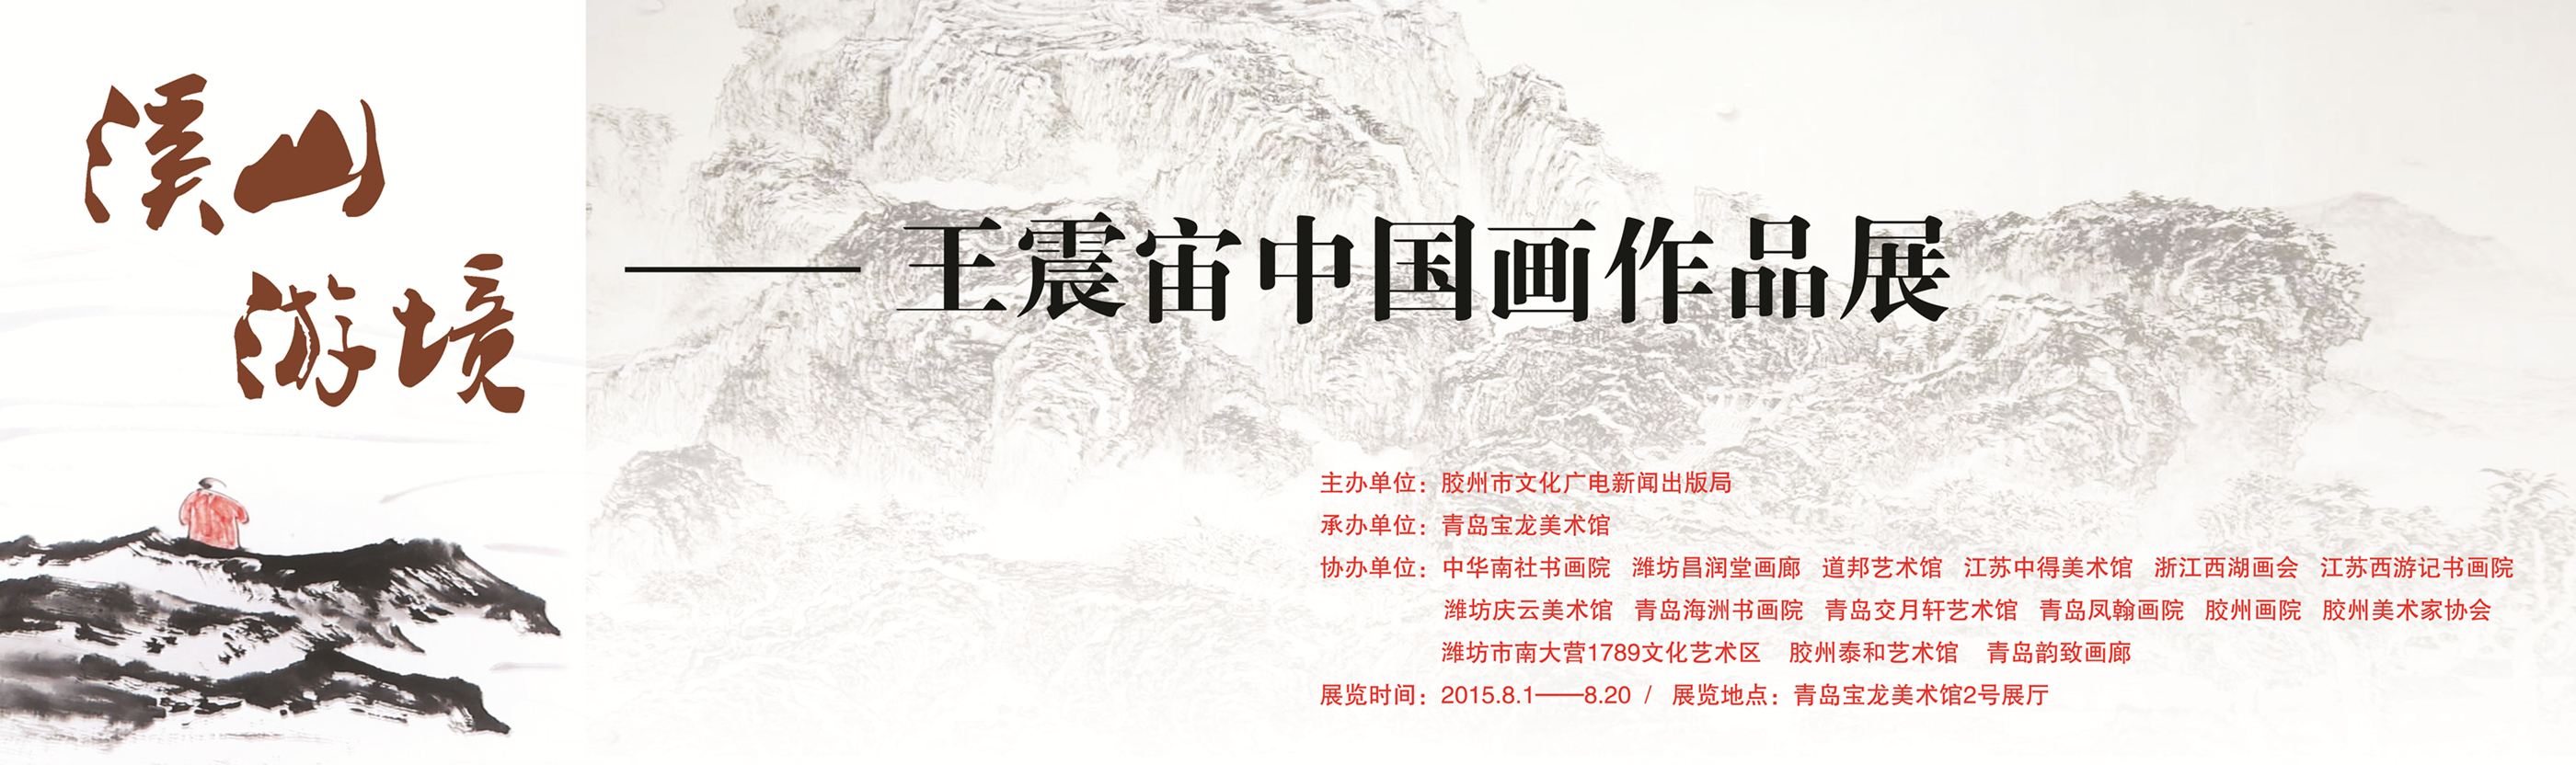 【展讯预告】溪山游境——王震宙中国画作品展将于8月1日开